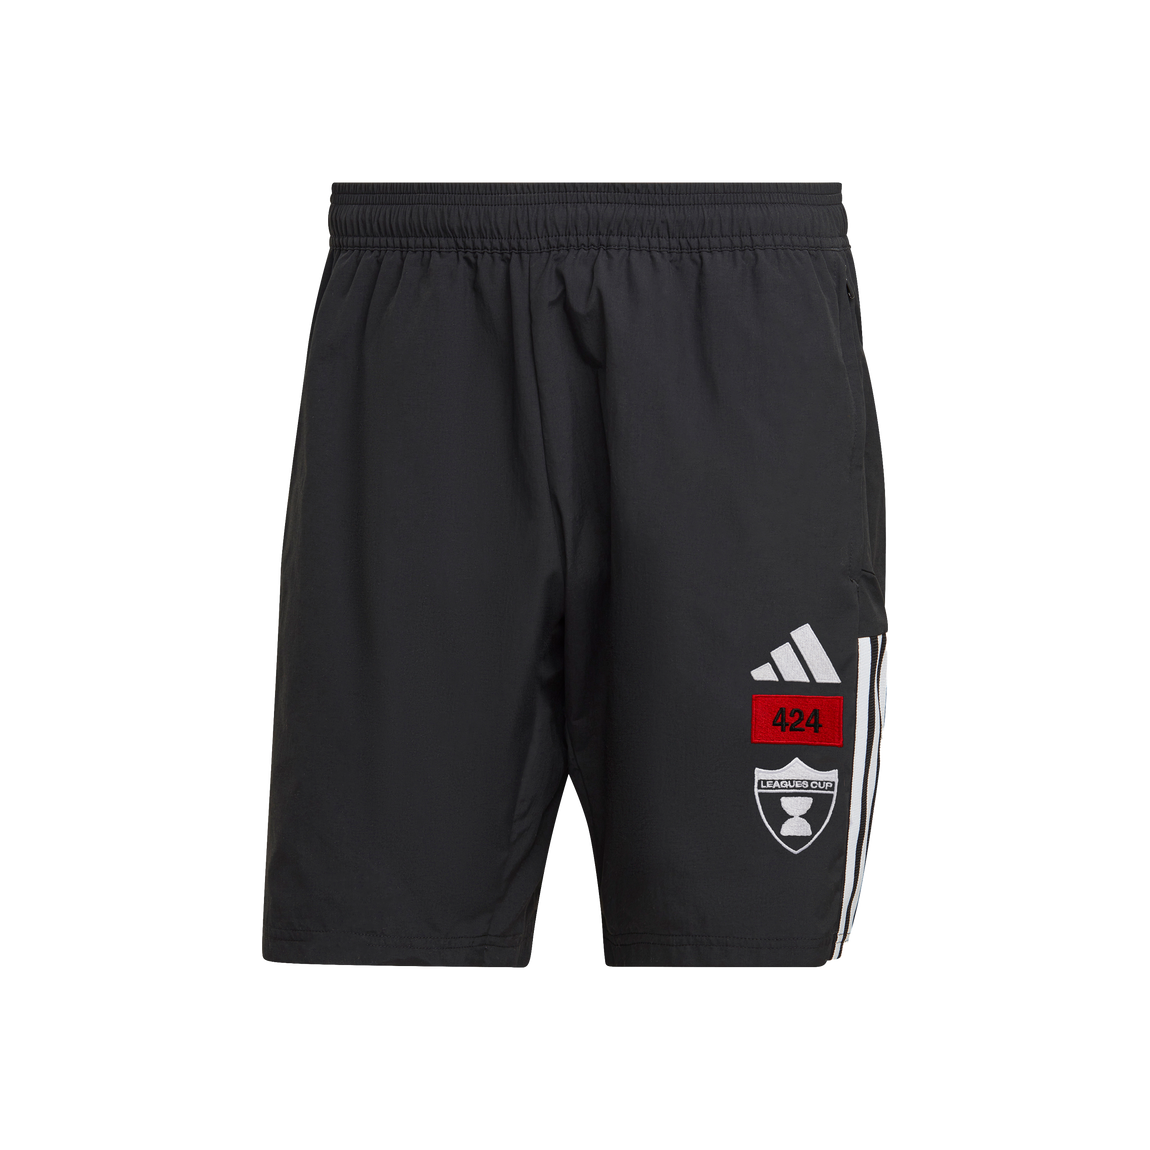 Adidas x 424 MLS Shorts (Black) - Adidas x 424 MLS Shorts (Black) - 